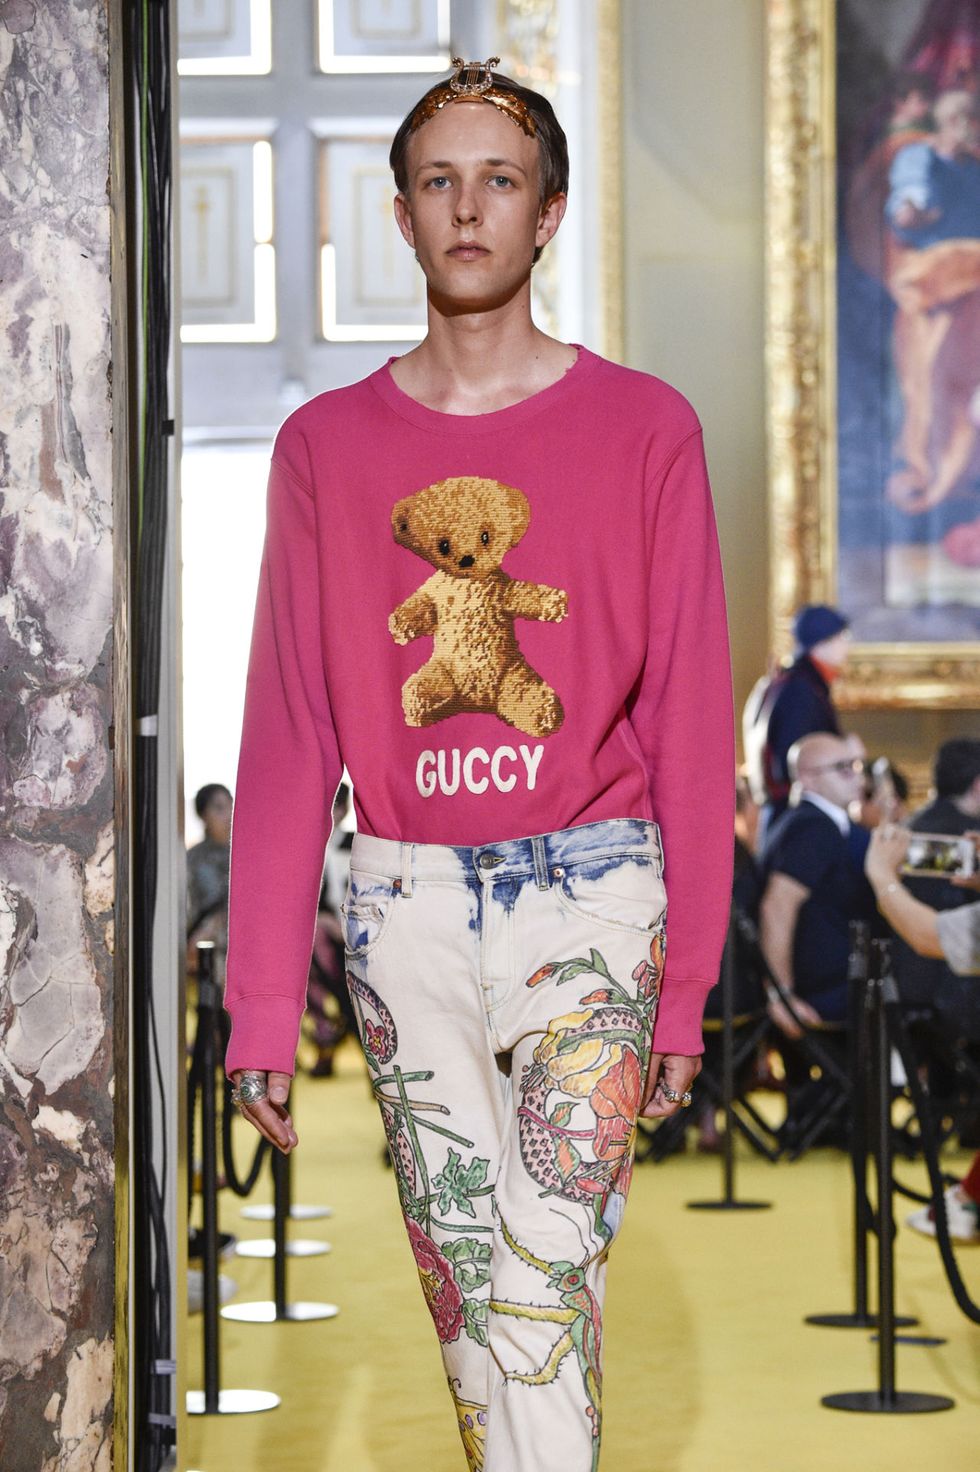 La collezione Gucci Cruise 2018, che ha appena sfilato a Firenze, entra in una nuova fase, è ricca di ispirazioni e dettagli imperdibili da copiare subito